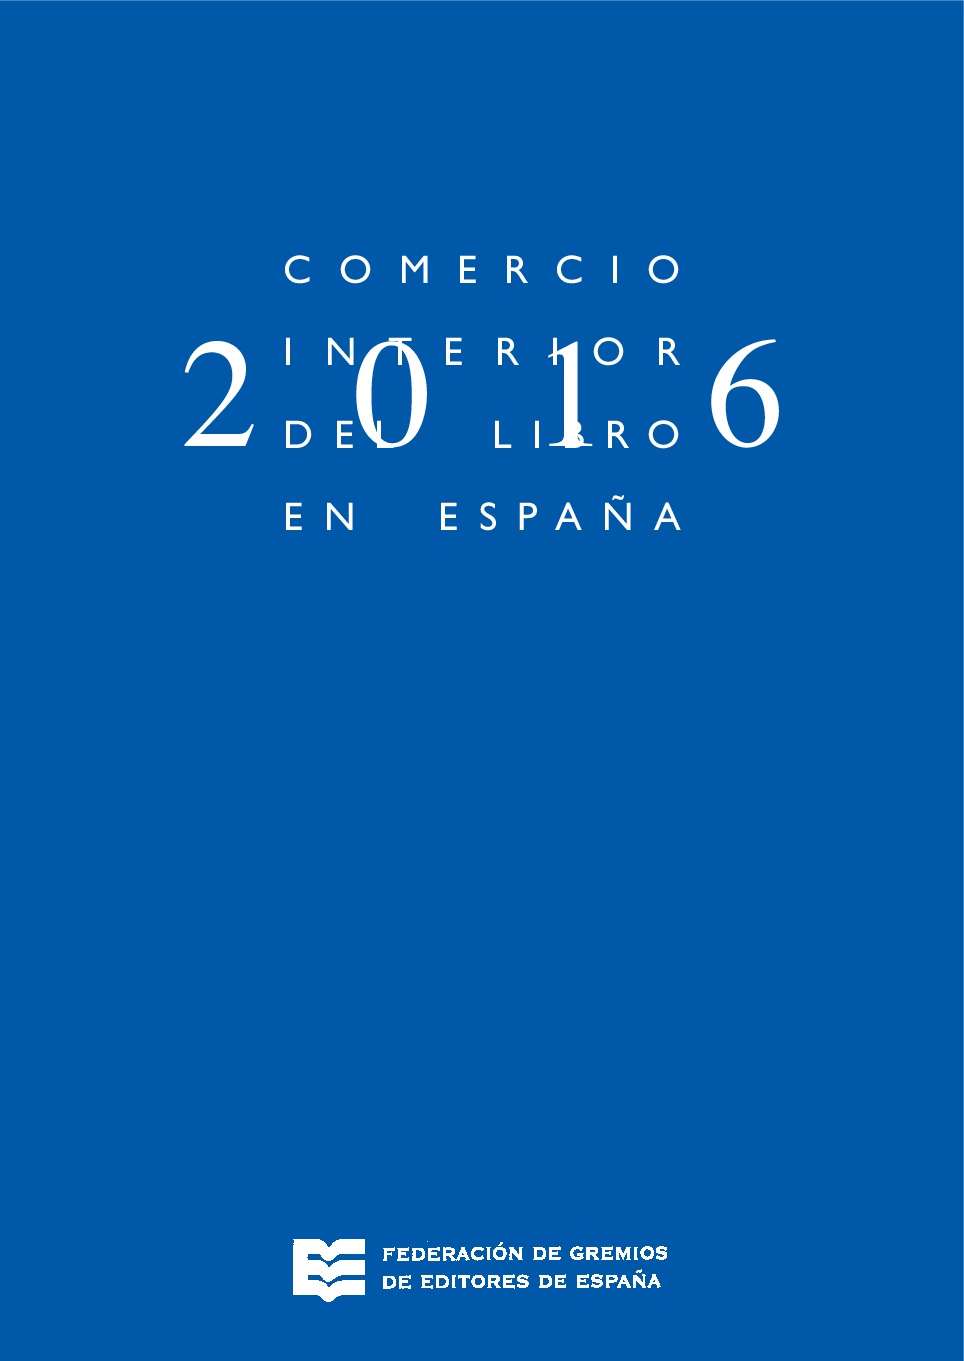 Comercio interior del libro en España 2016